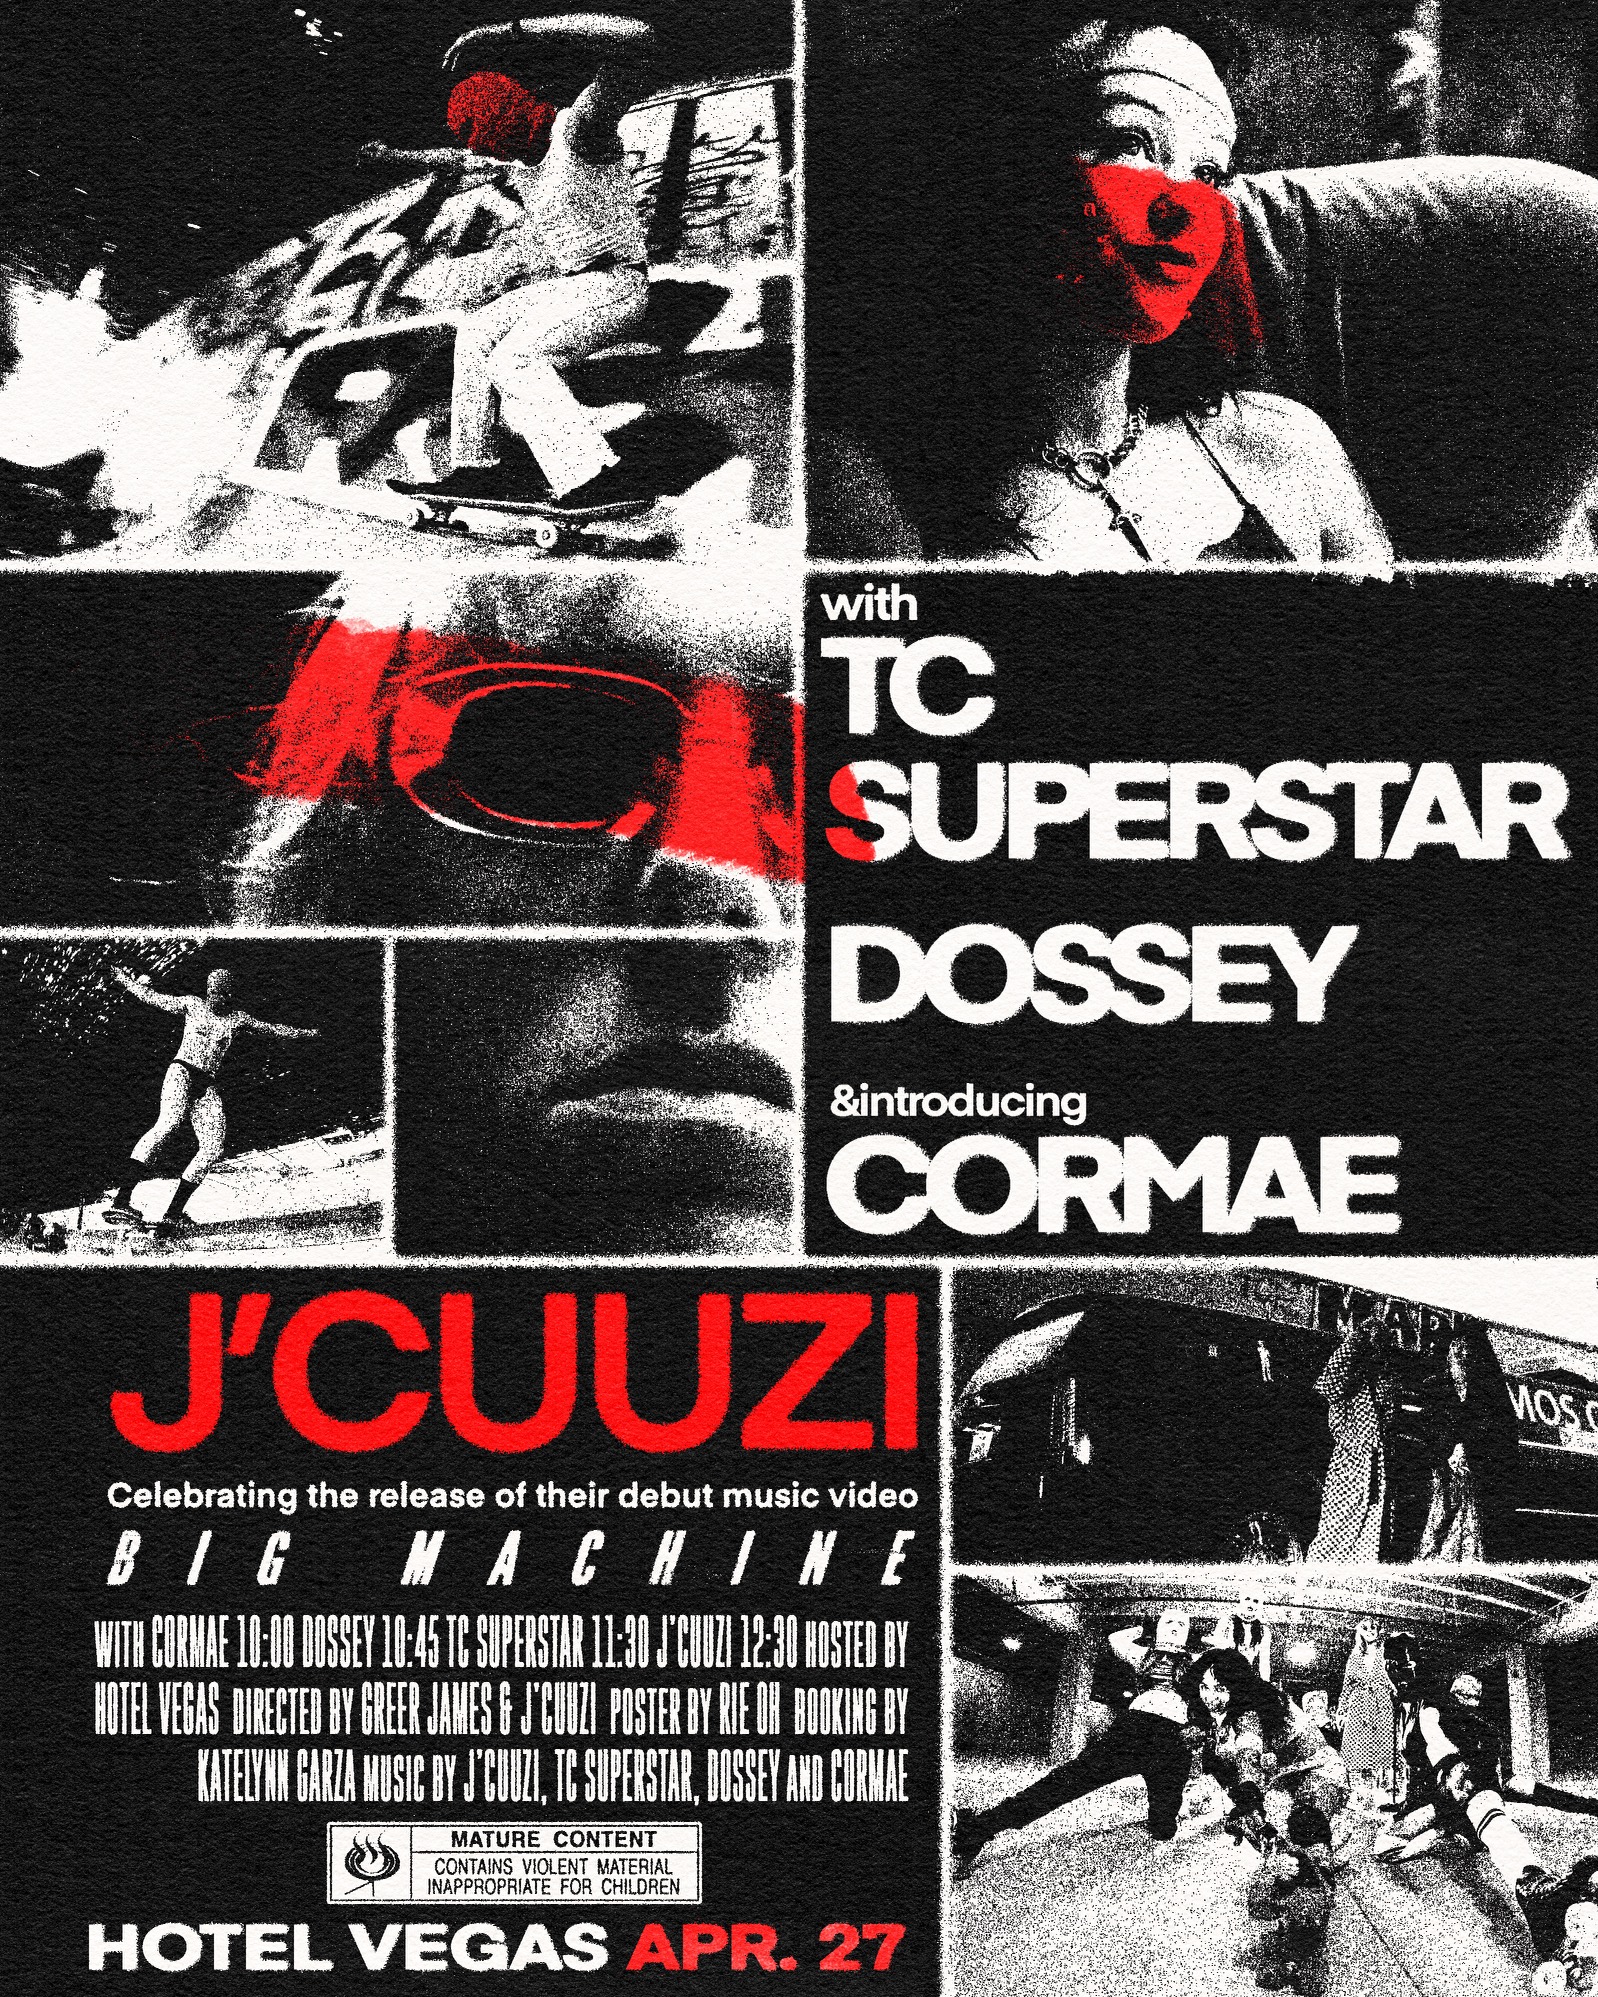 J'CUUZI (Big Machine Music Video Release) with TC Superstar, Dossey, CorMae